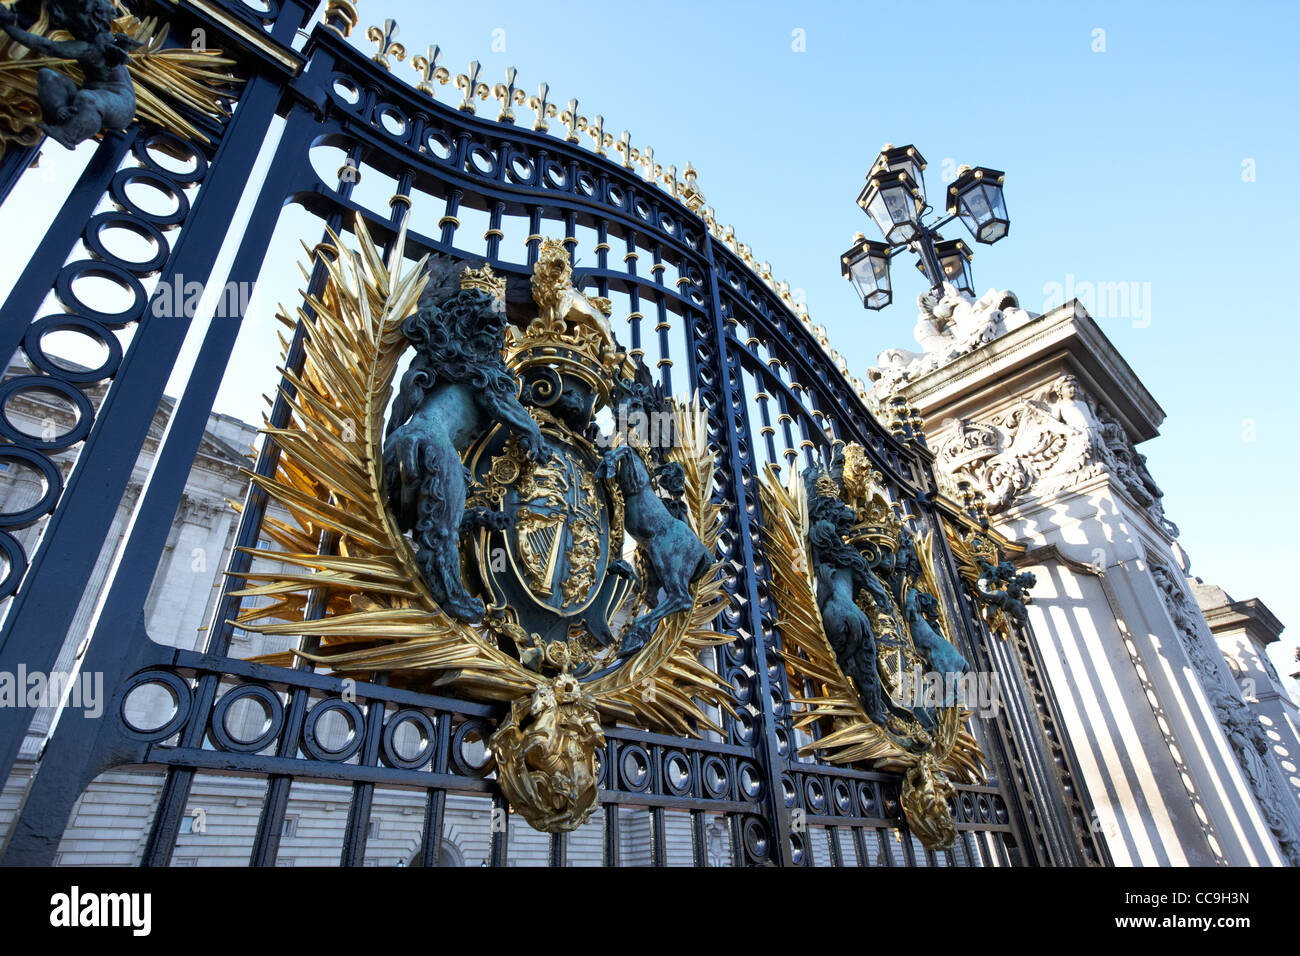 the gates of buckingham palace London England UK United kingdom Stock Photo